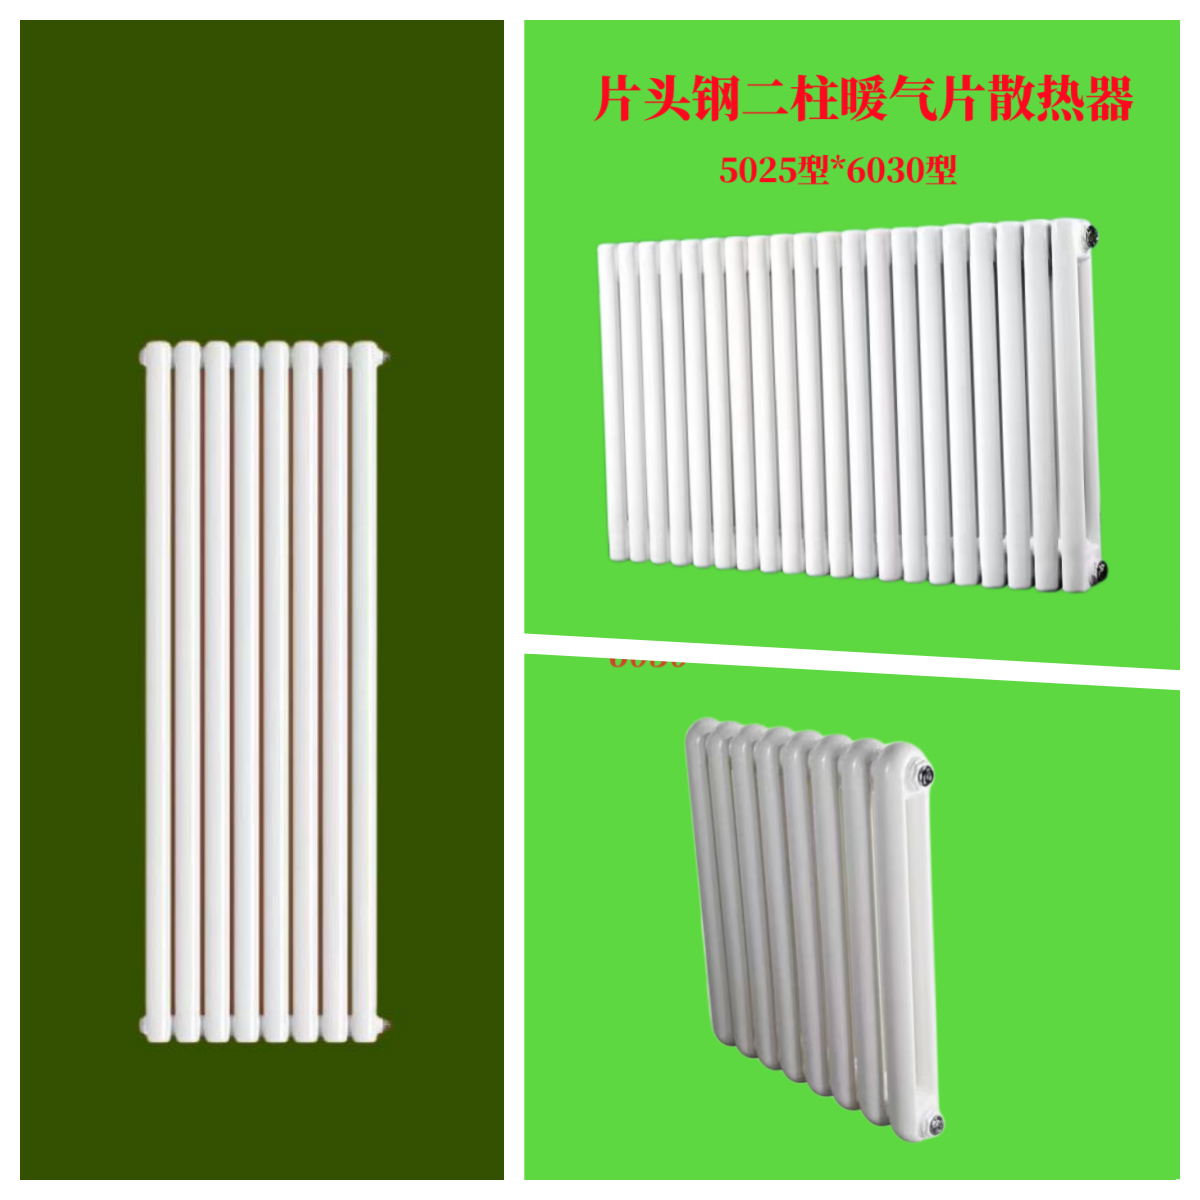 钢二柱暖气片报价-钢二柱暖气片生产厂家-GZ2-1.0/0.6-1.0钢制柱形散热器 钢二柱暖气片散热器